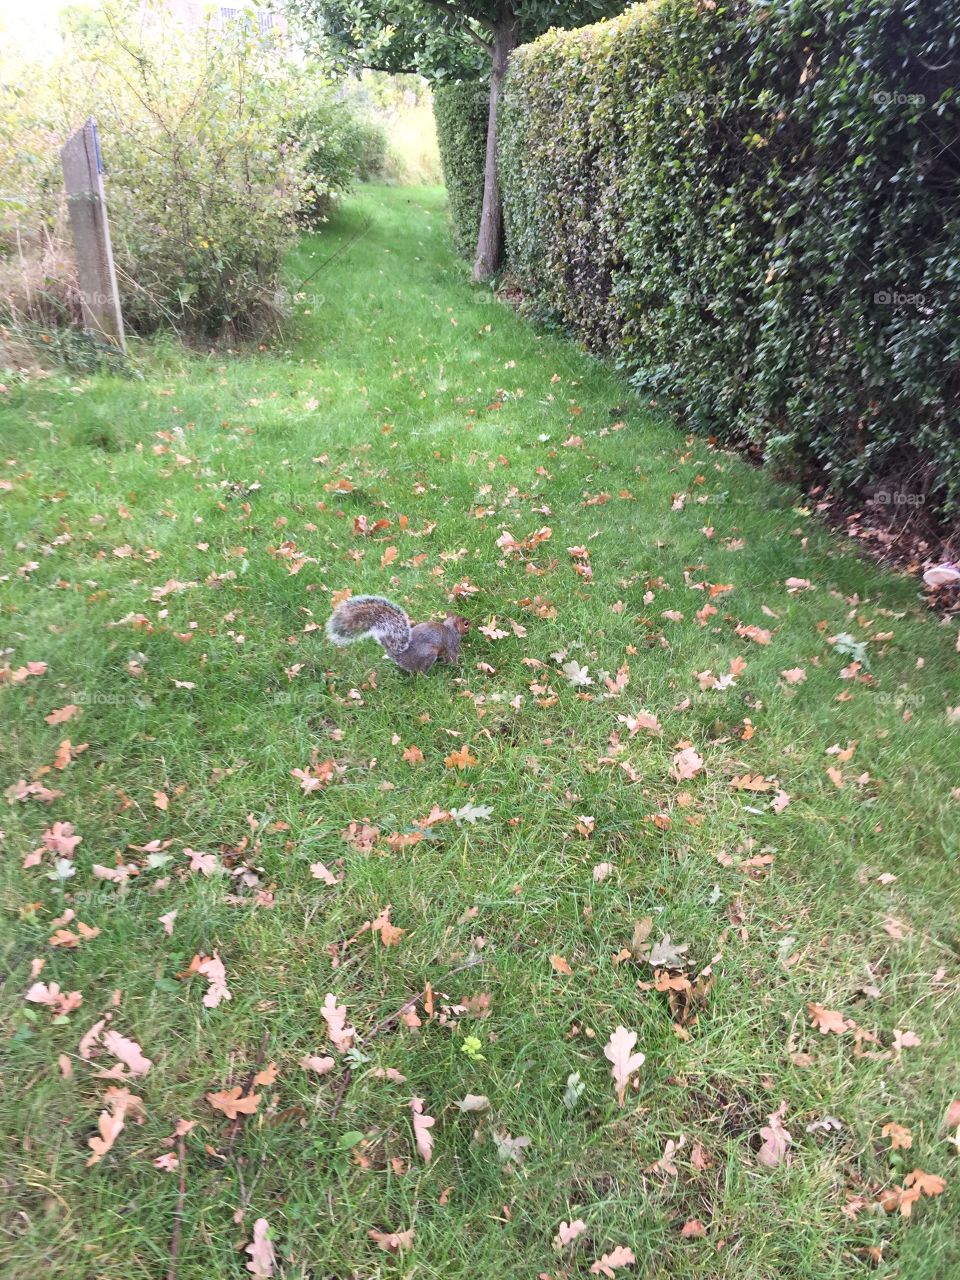 Brave little squirrel